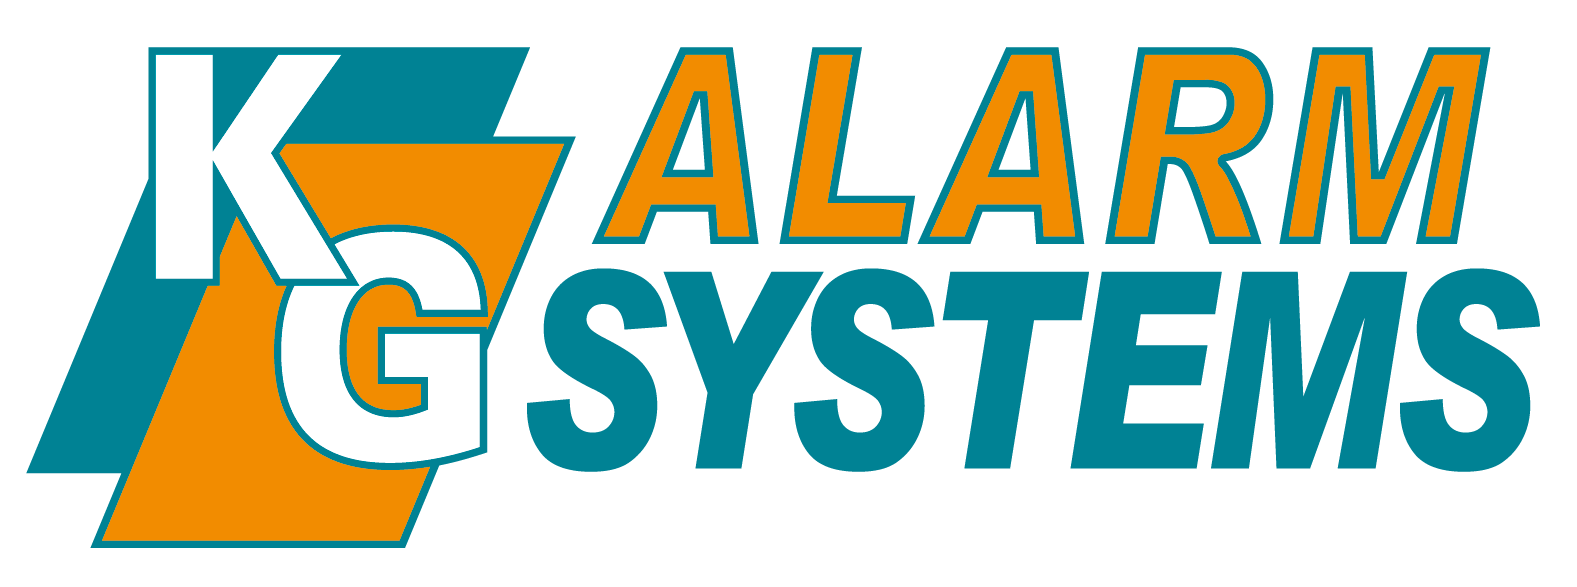 logo KG Alarm Systems zobv 01